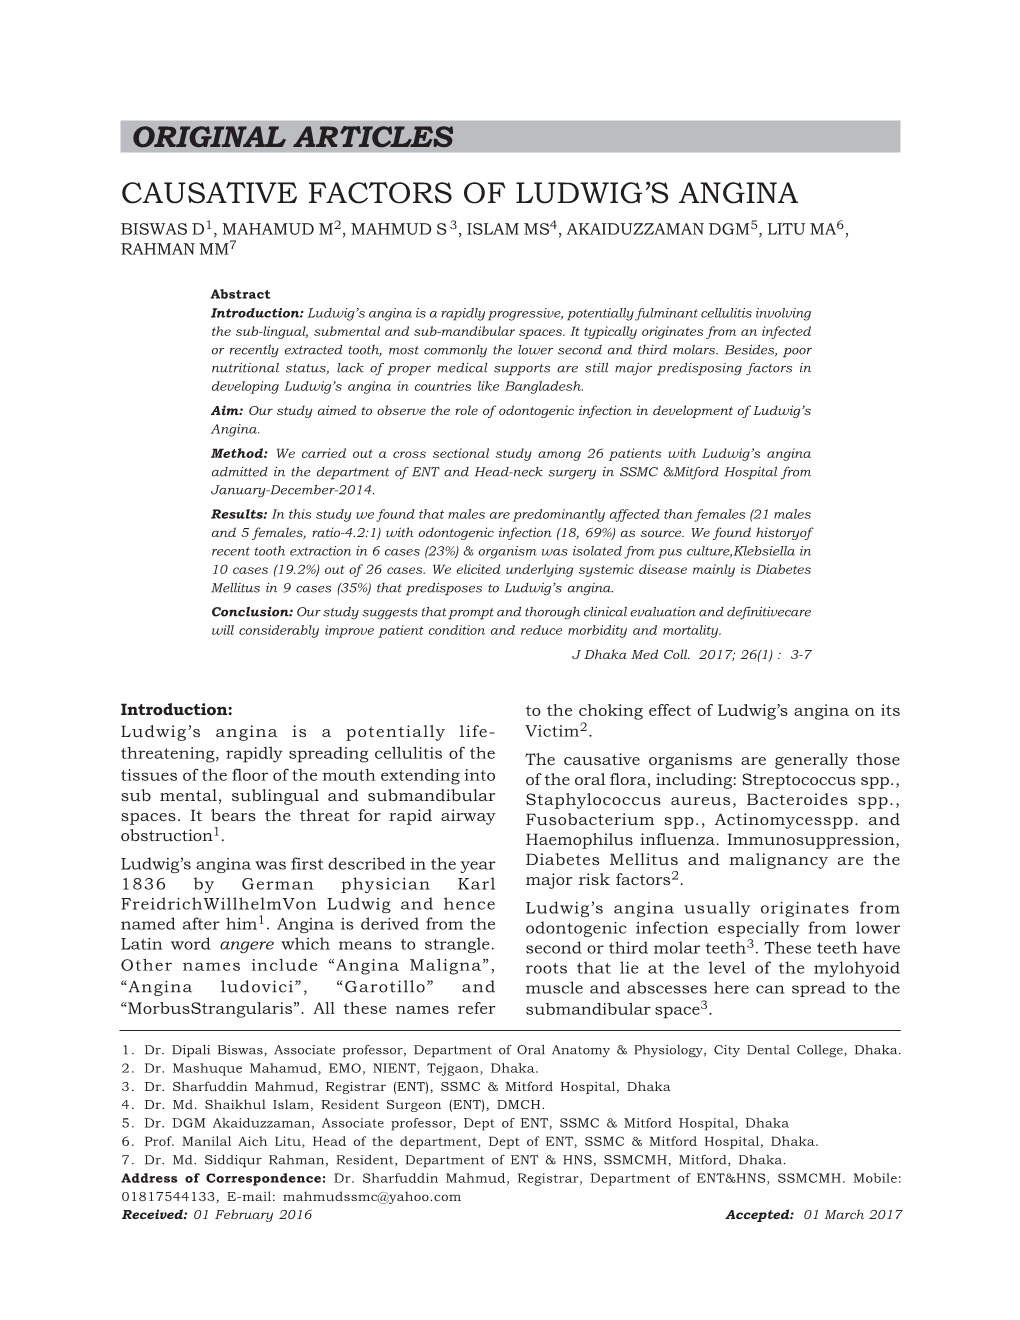 Original Articles Causative Factors of Ludwig's Angina